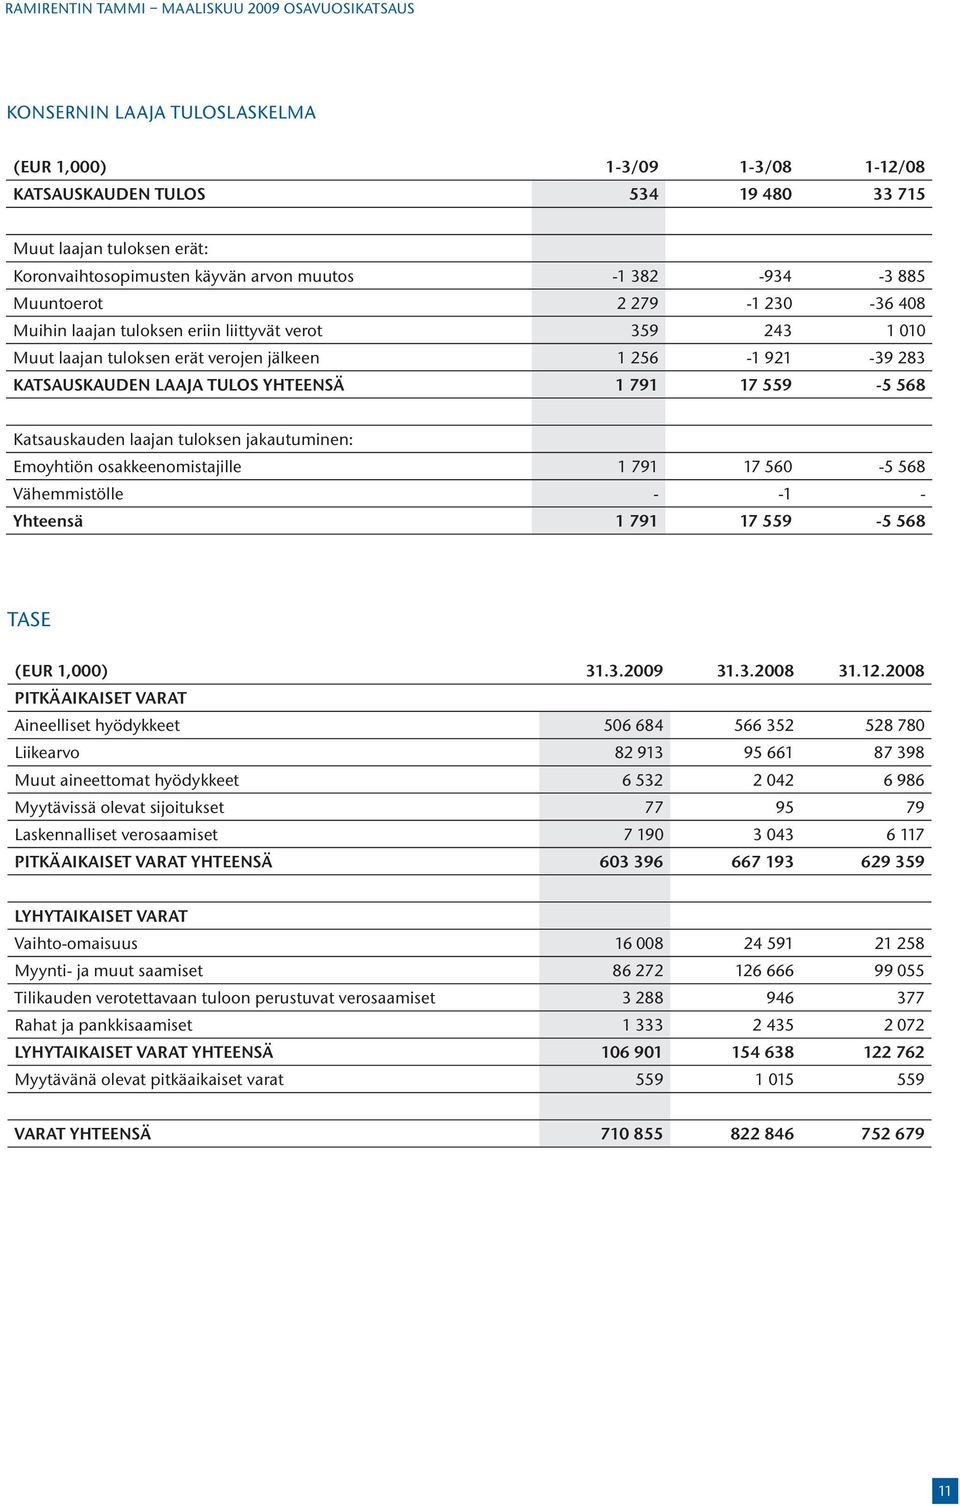 Katsauskauden laajan tuloksen jakautuminen: Emoyhtiön osakkeenomistajille 1 791 17 560-5 568 Vähemmistölle - -1 - Yhteensä 1 791 17 559-5 568 TASE (EUR 1,000) 31.3.2009 31.3.2008 31.12.